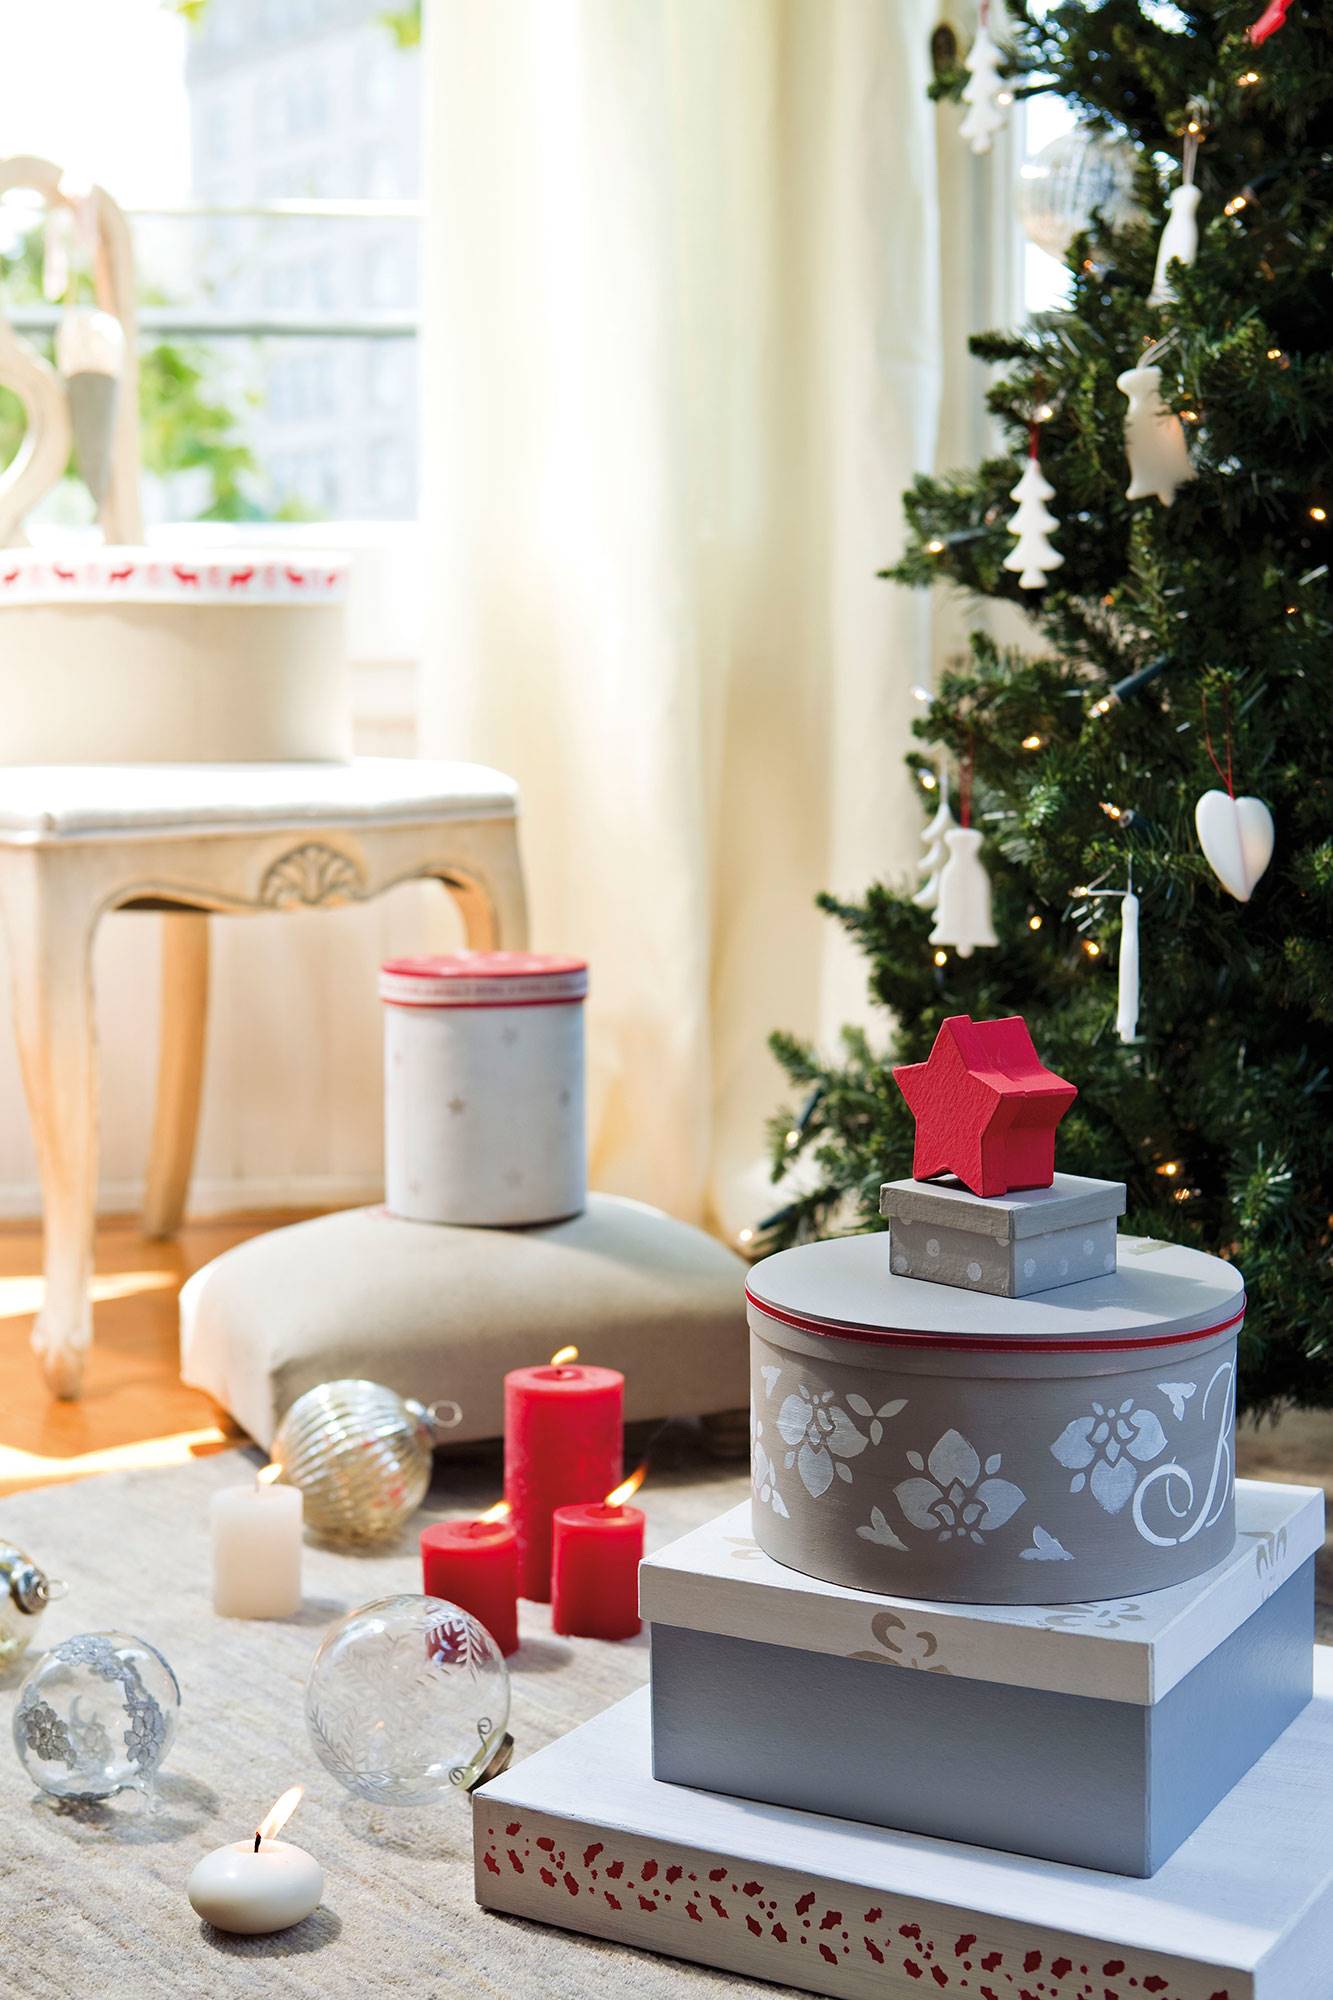 Detalle de regalos de Navidad decorados con esténcil